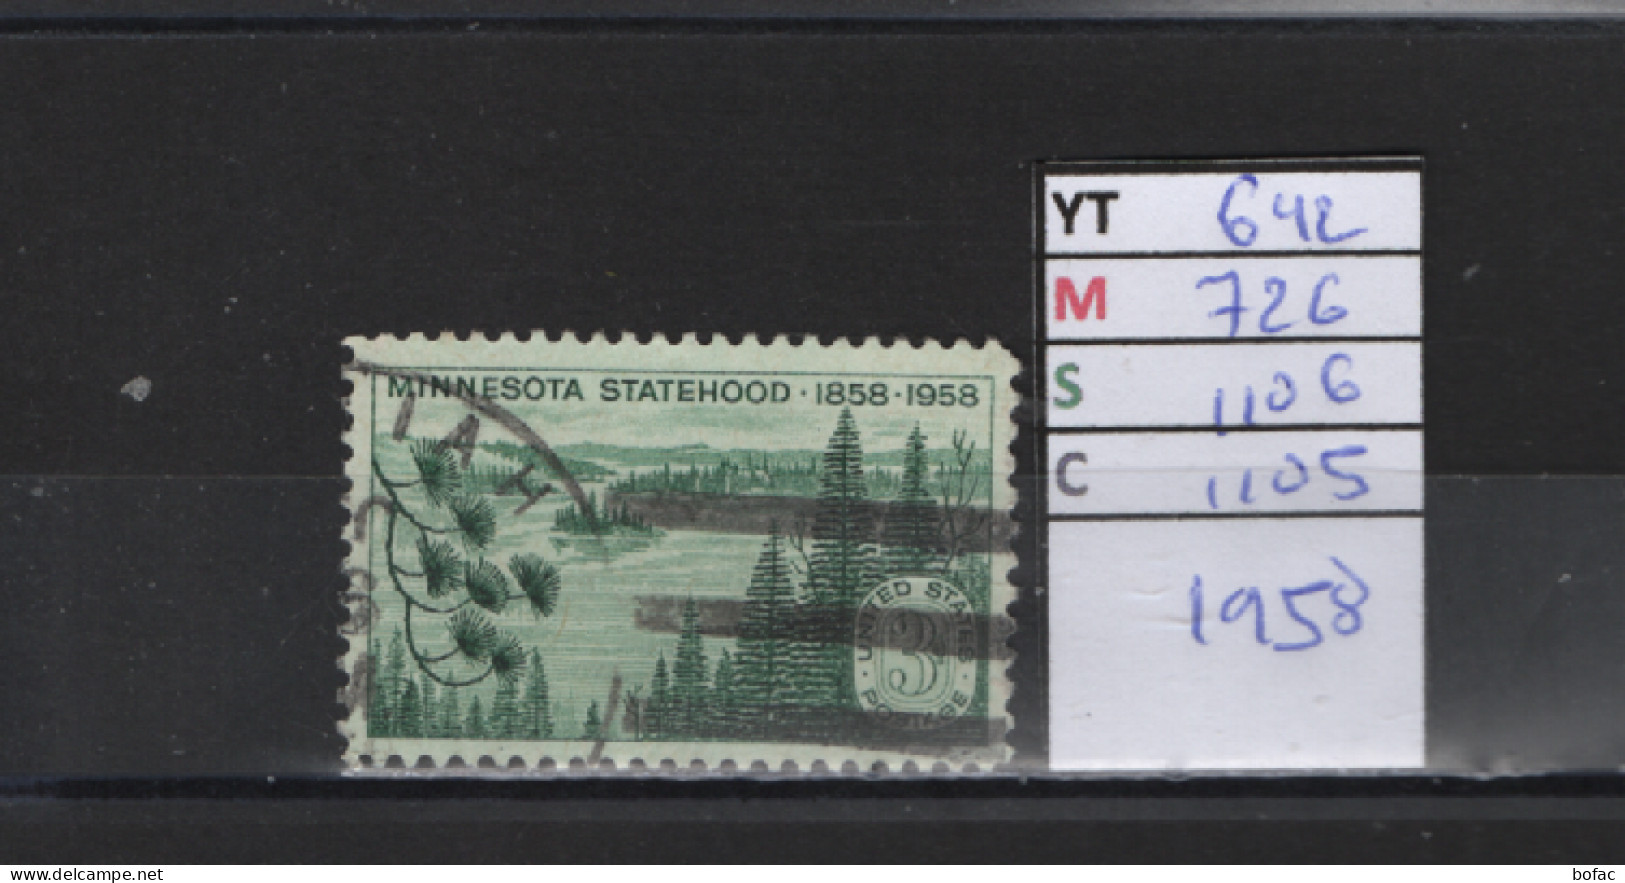 PRIX FIXE Obl 642 YT 726 MIC 1106 SCO 1105 GIB Etat Du Minnesota 1958  58A/07 - Used Stamps